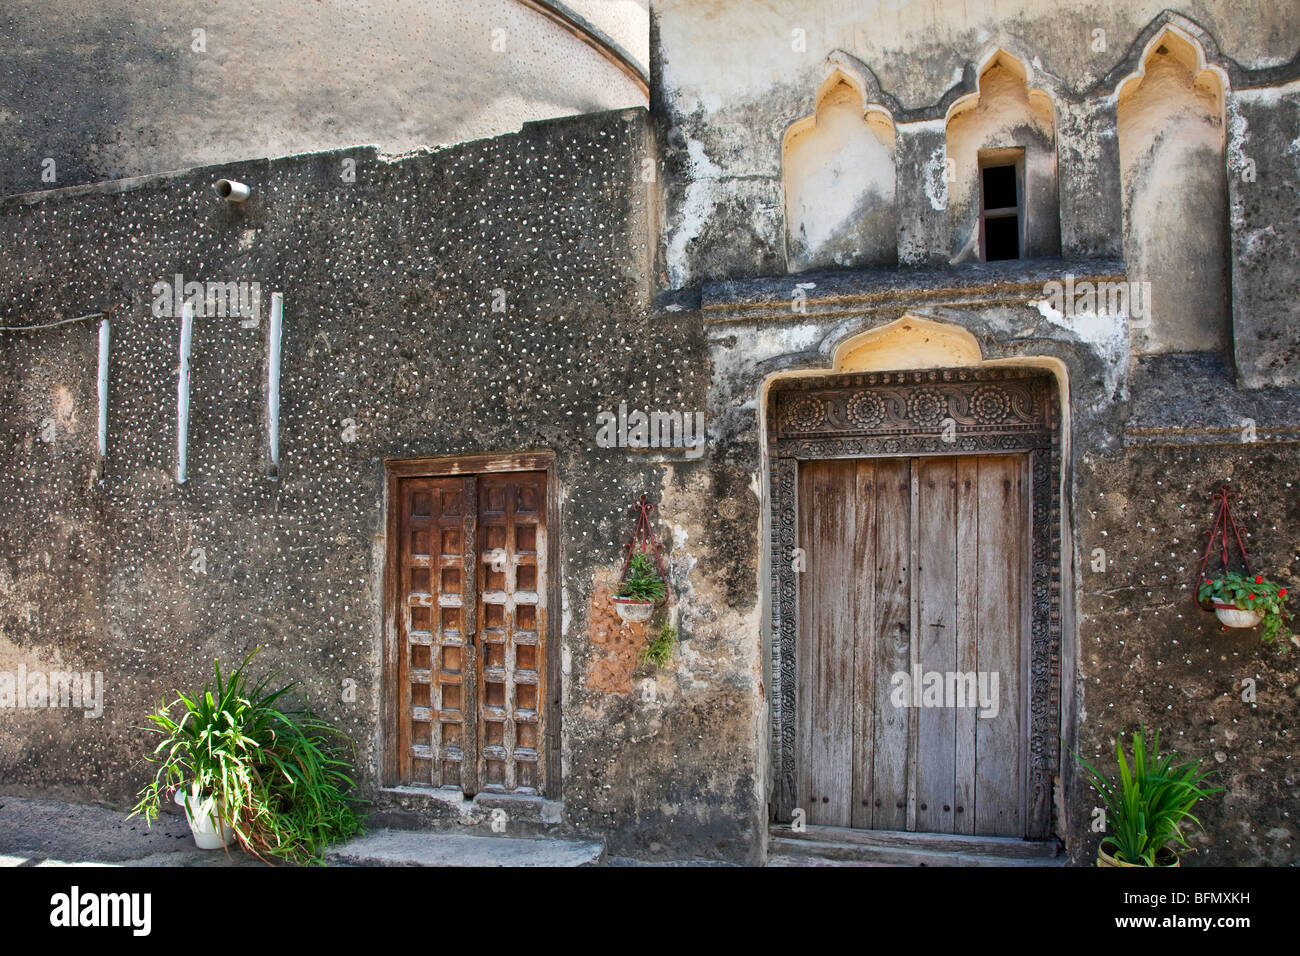 Tanzania, Zanzibar Stone Town. Vecchie porte della cattedrale anglicana Chiesa di Cristo e la sua fondazione prevista in occasione del Natale 1873. Foto Stock